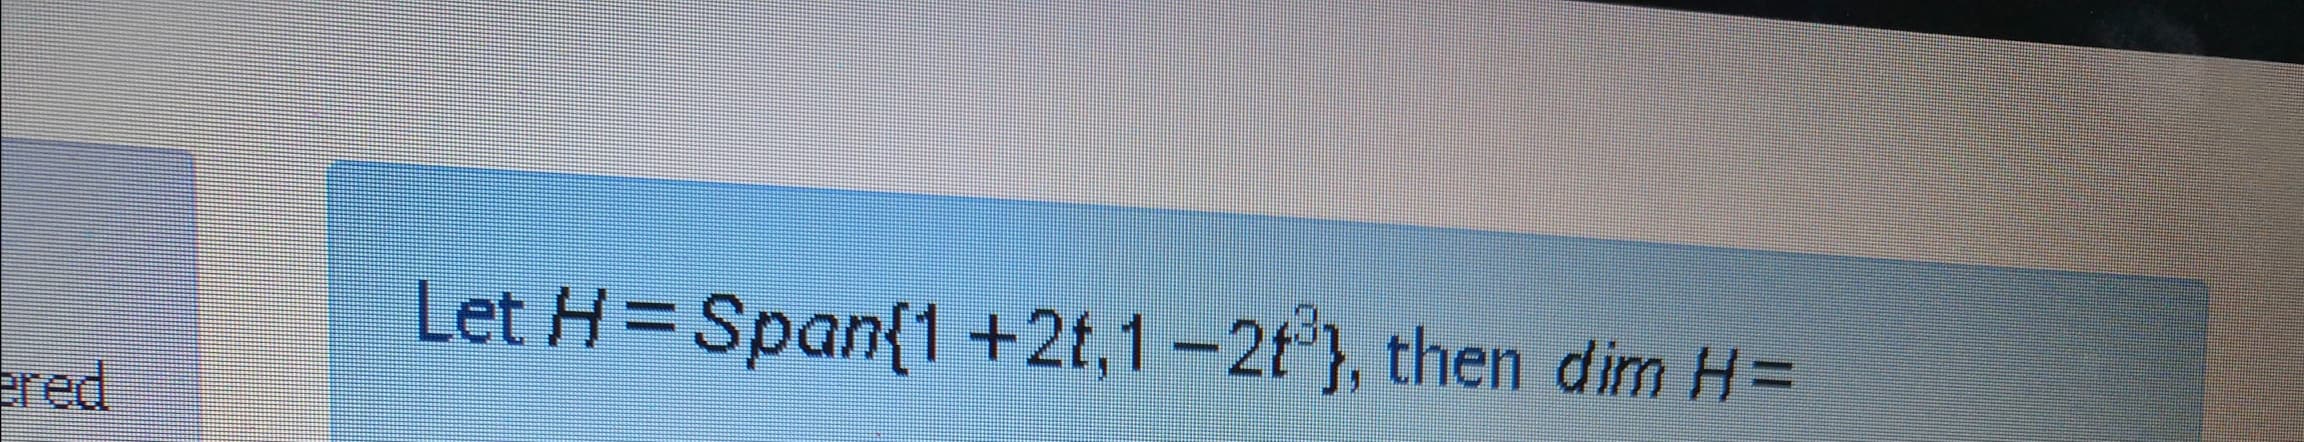 Let H=Span{1+2t,1-2t°}, then dim H=
